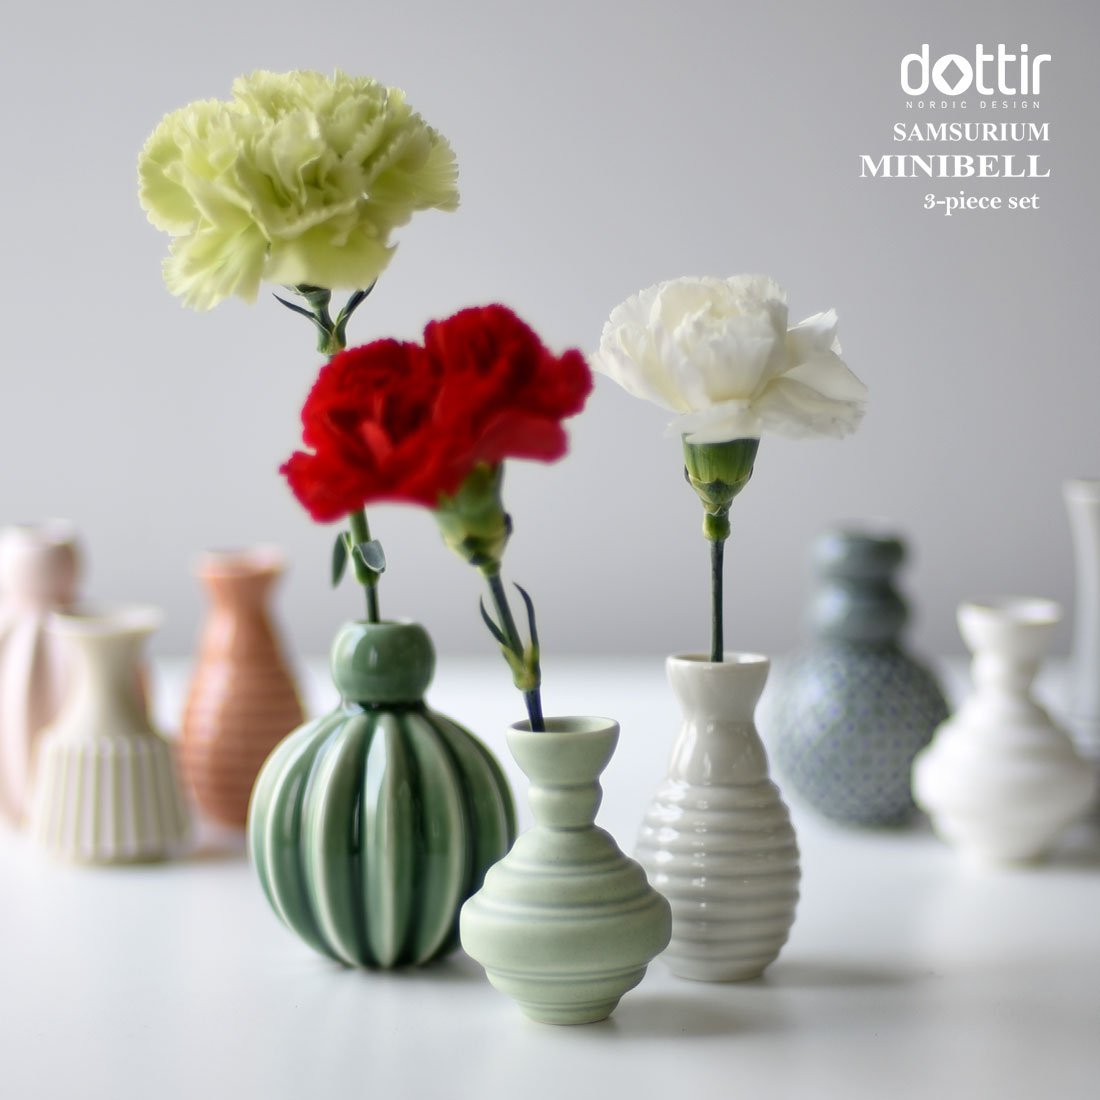 Dottir Samsurium Minibell Vase Set, Green